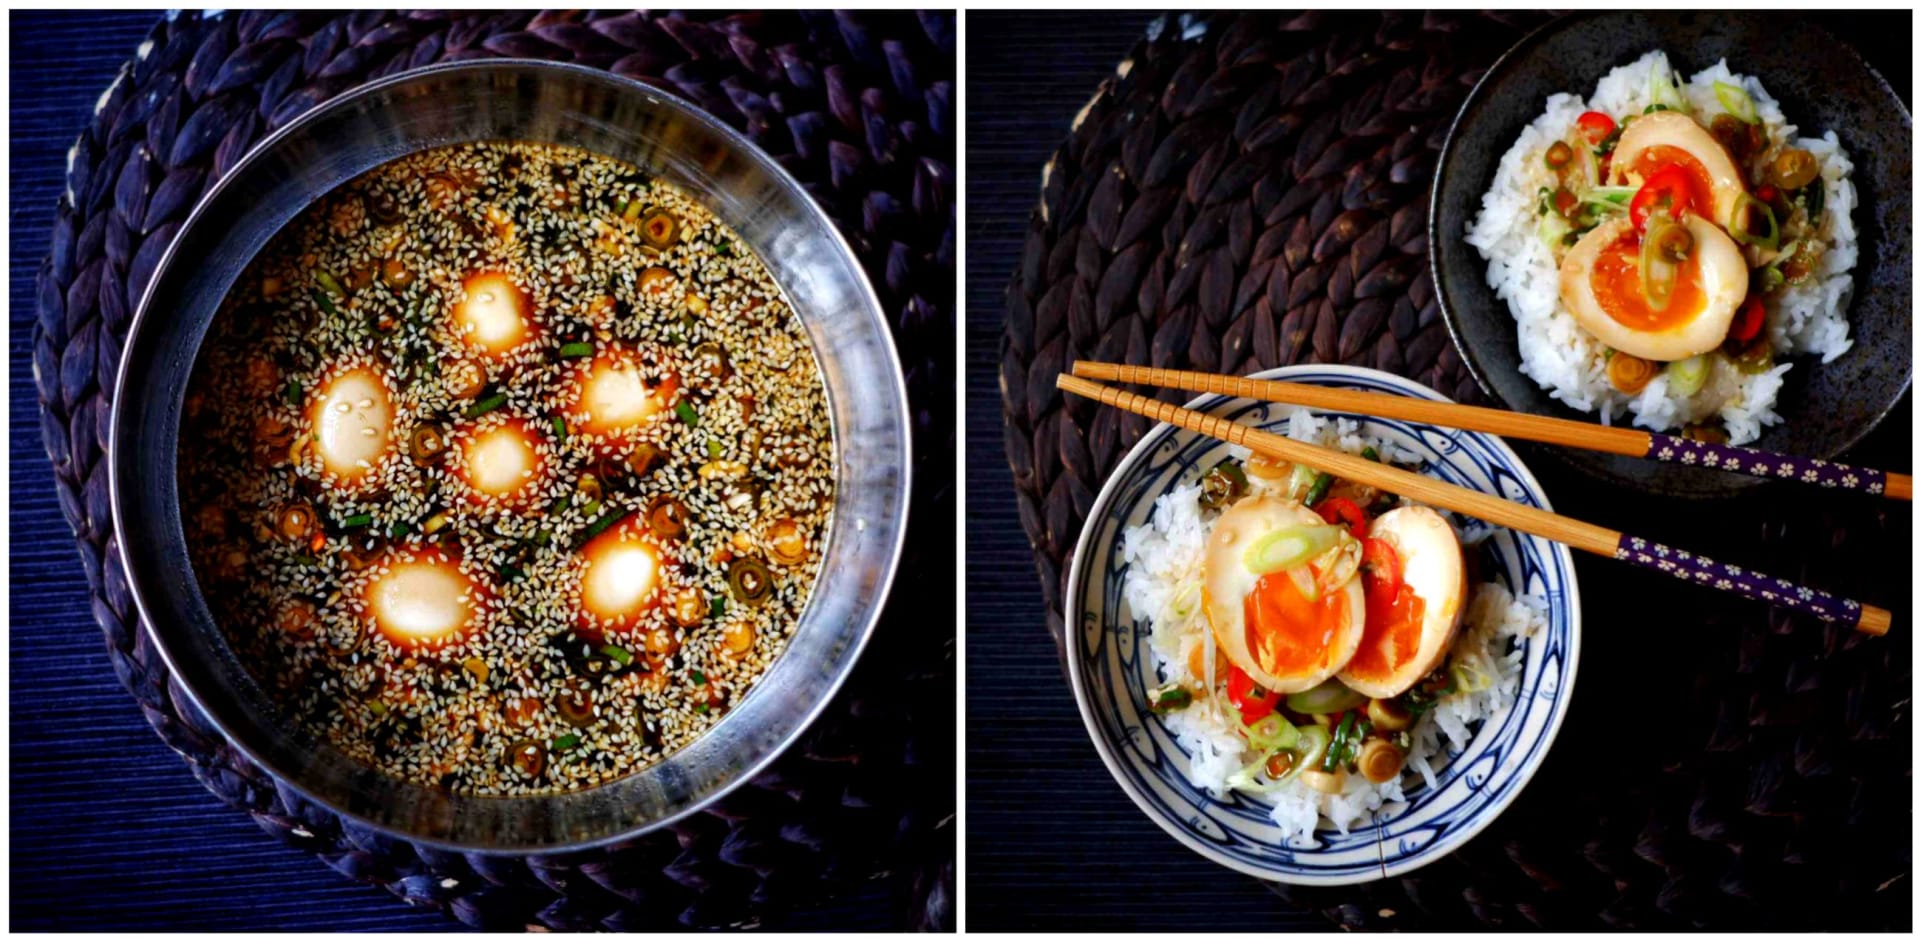 S Klárou v kuchyni: Korejská marinovaná vejce Mayak Eggs 2